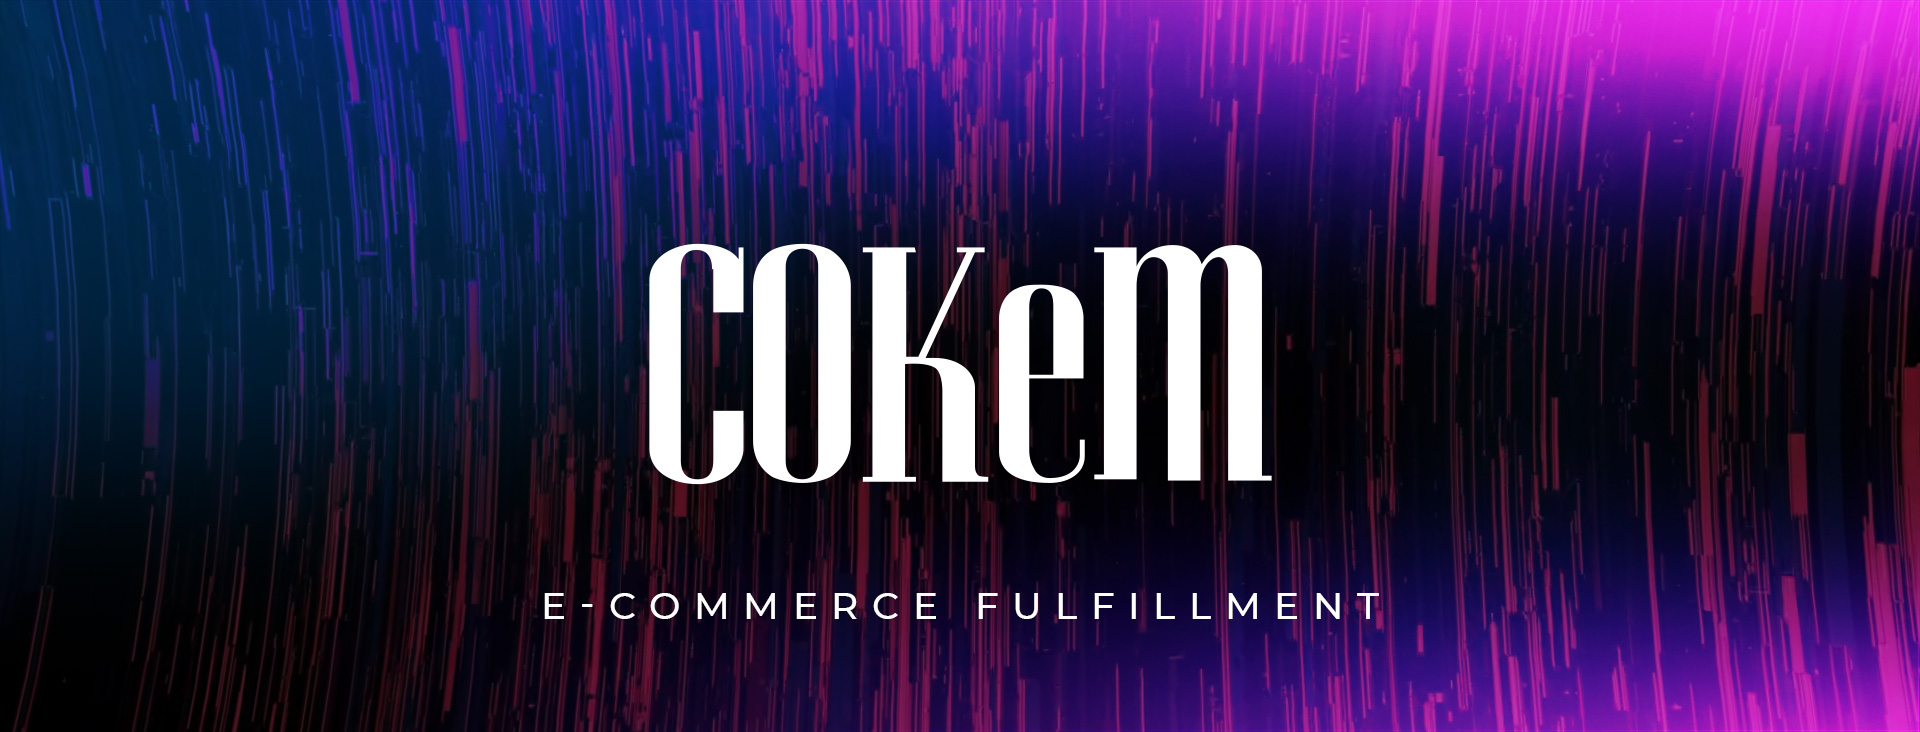 E-commerce Fulfillment Banner